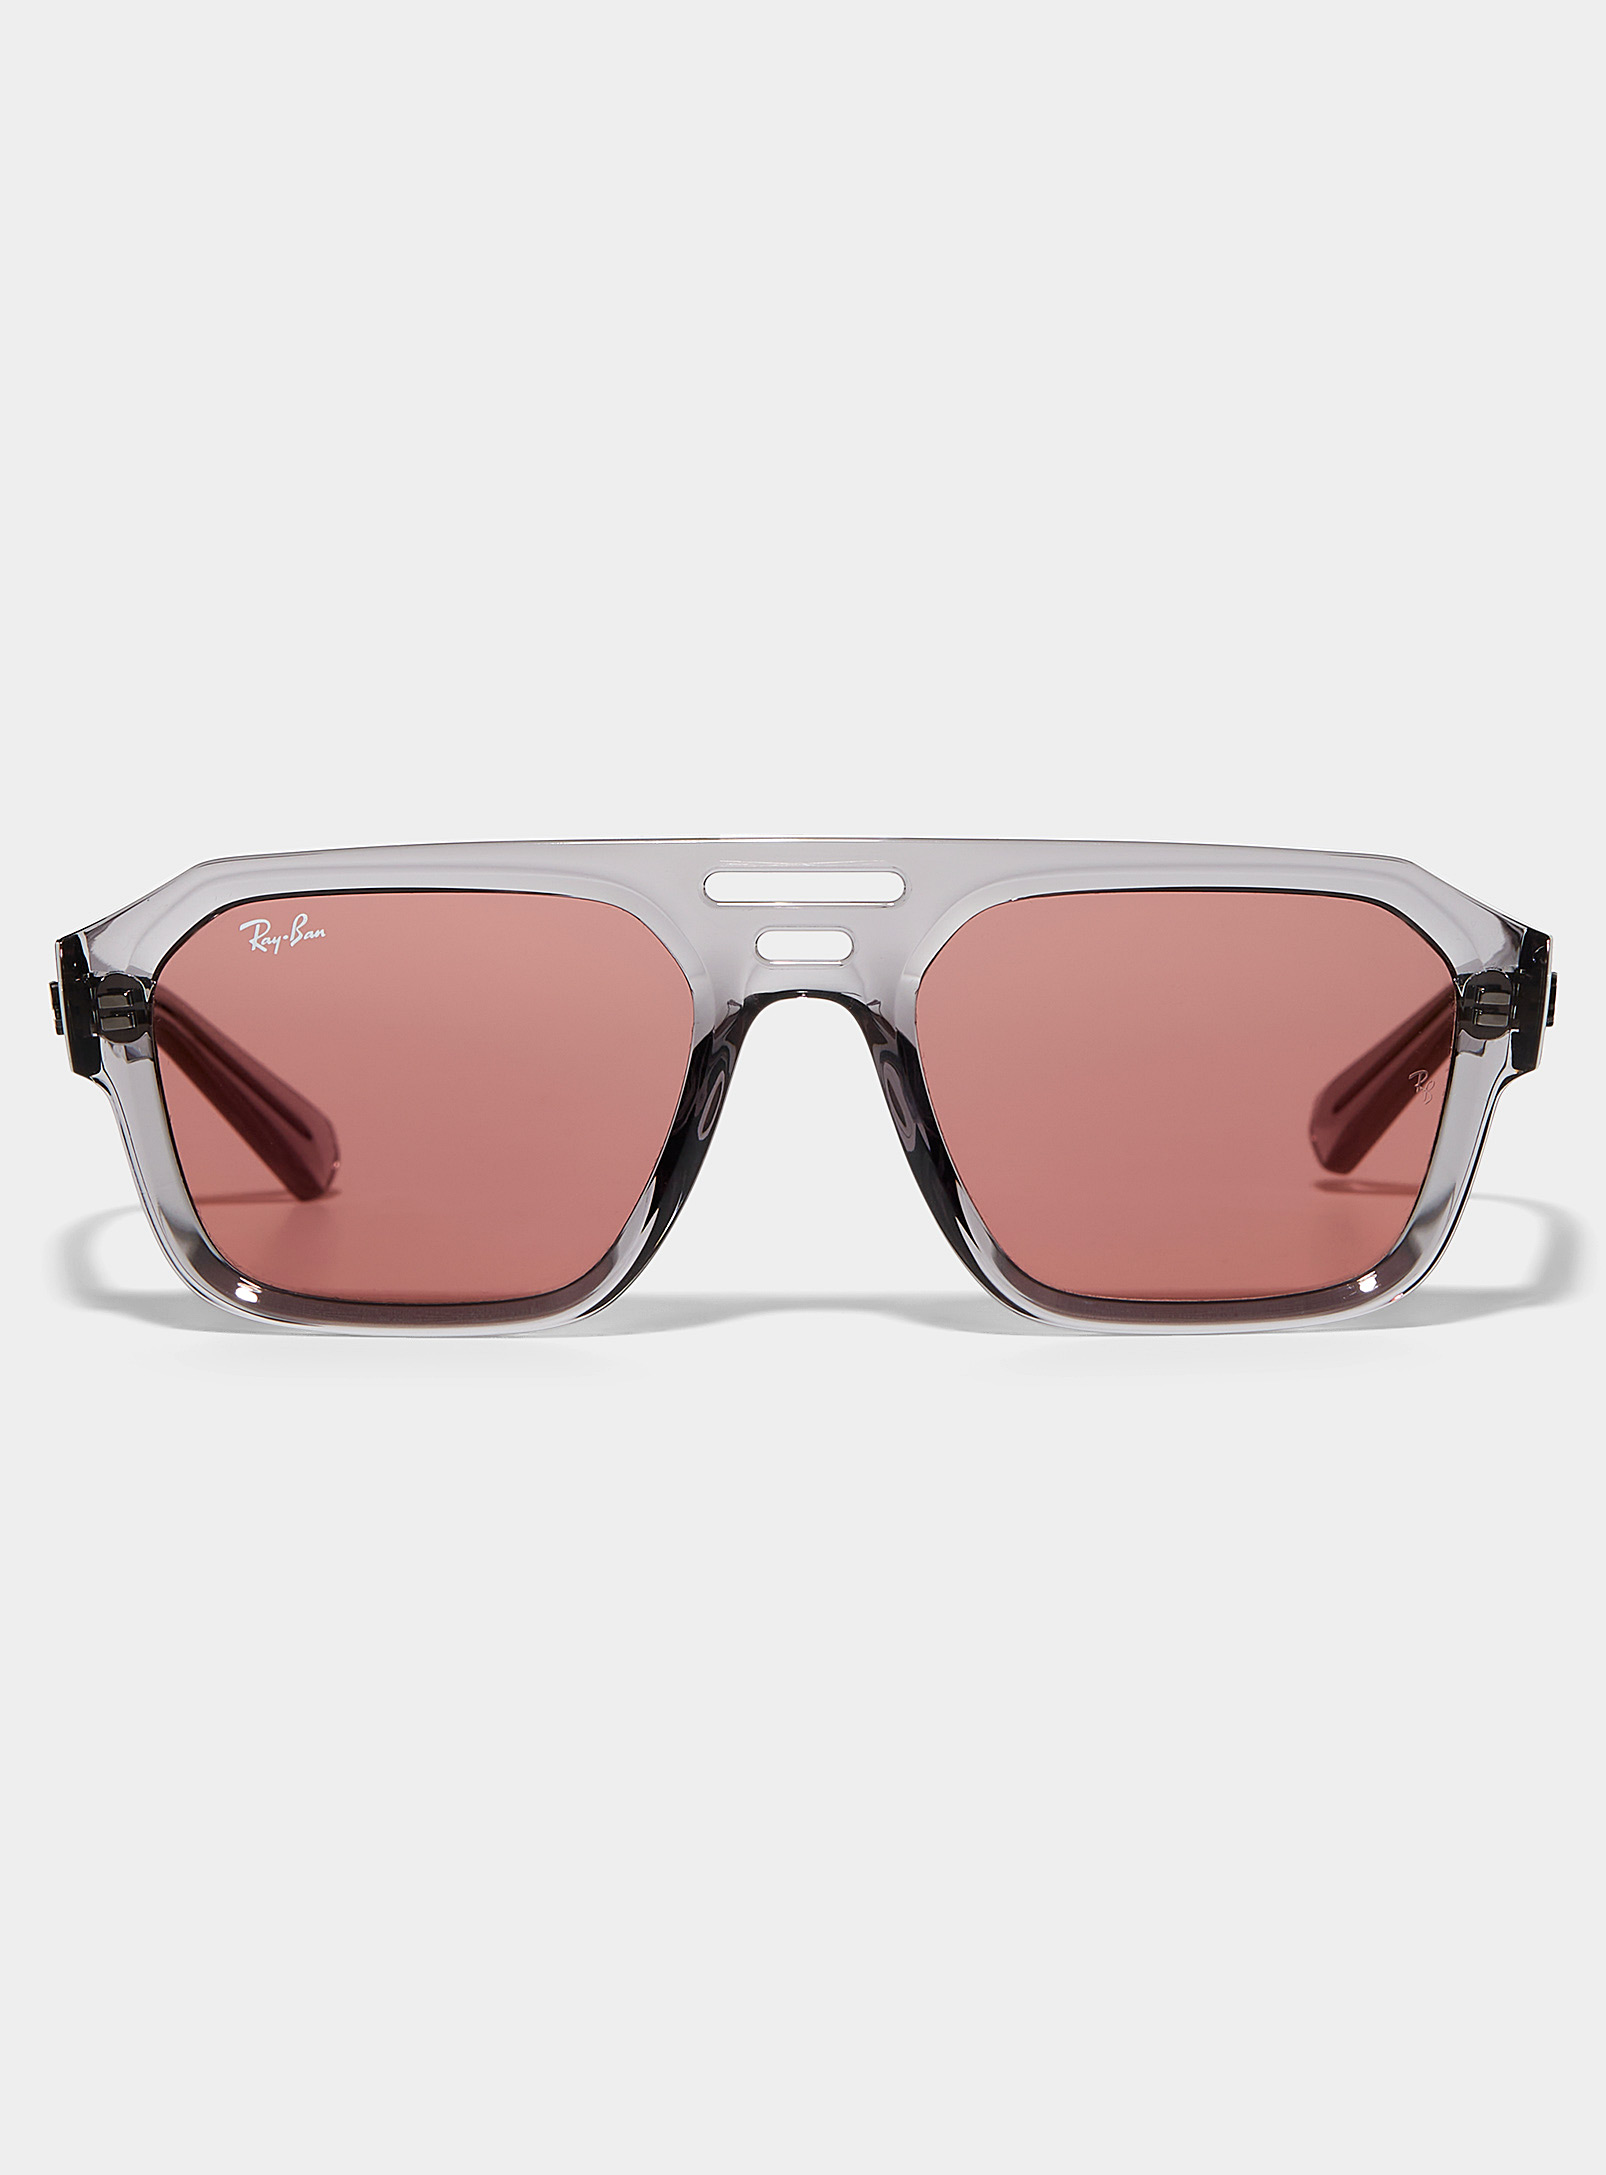 Ray Ban Corrigan Pink Lens Aviator Sunglasses In Grey